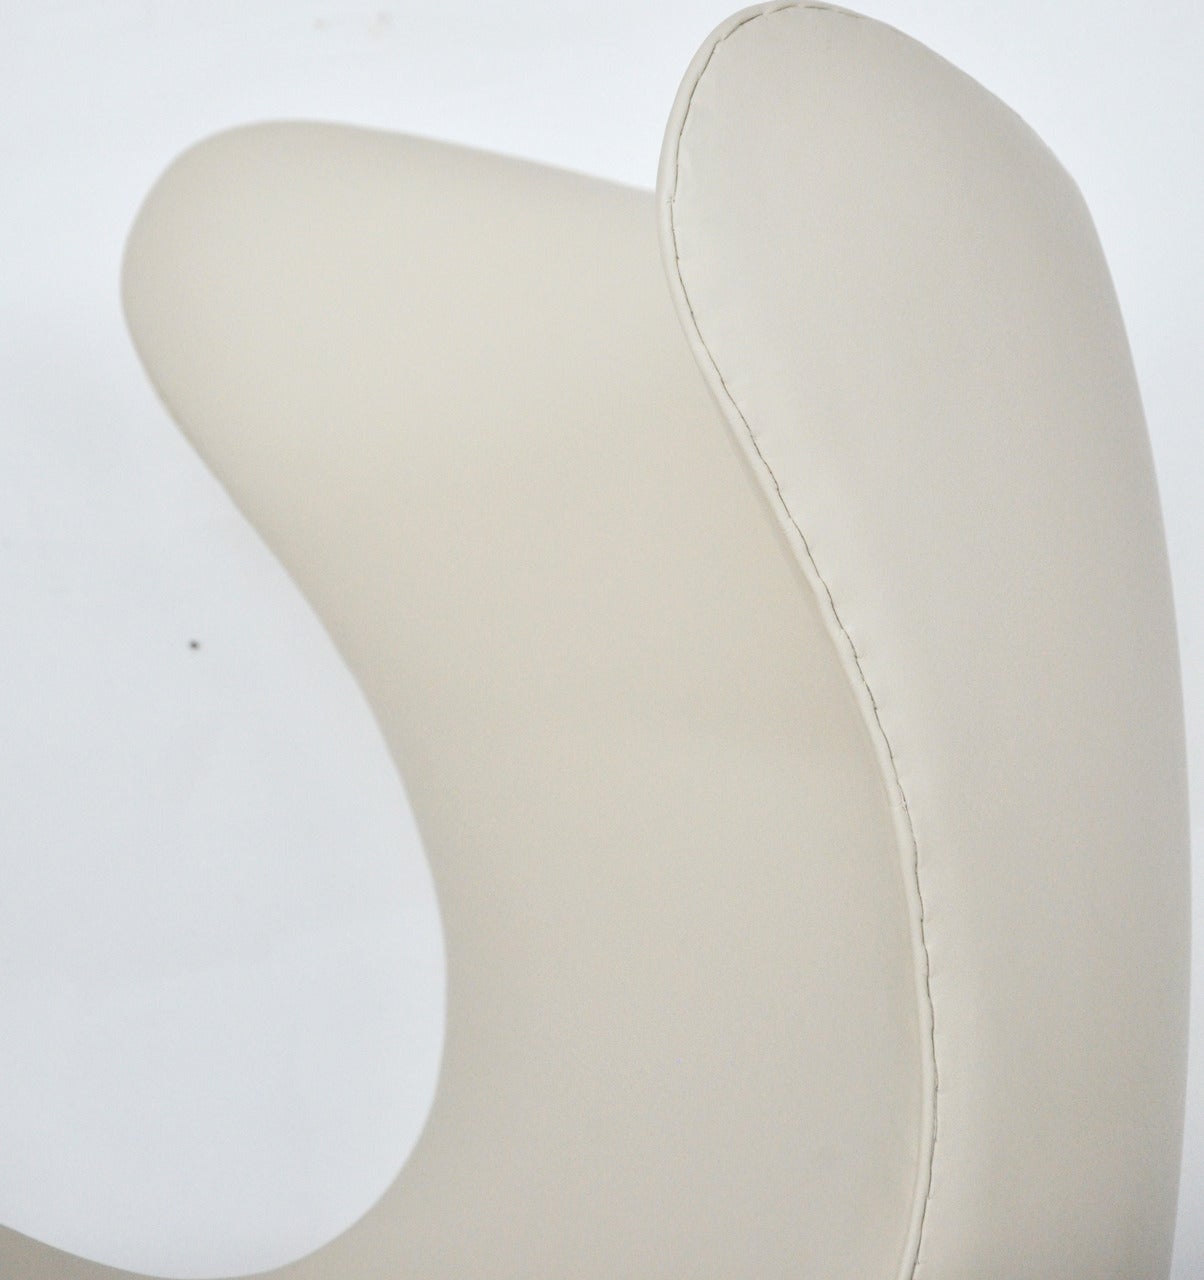 Mid-Century Modern Arne Jacobsen Egg Chair